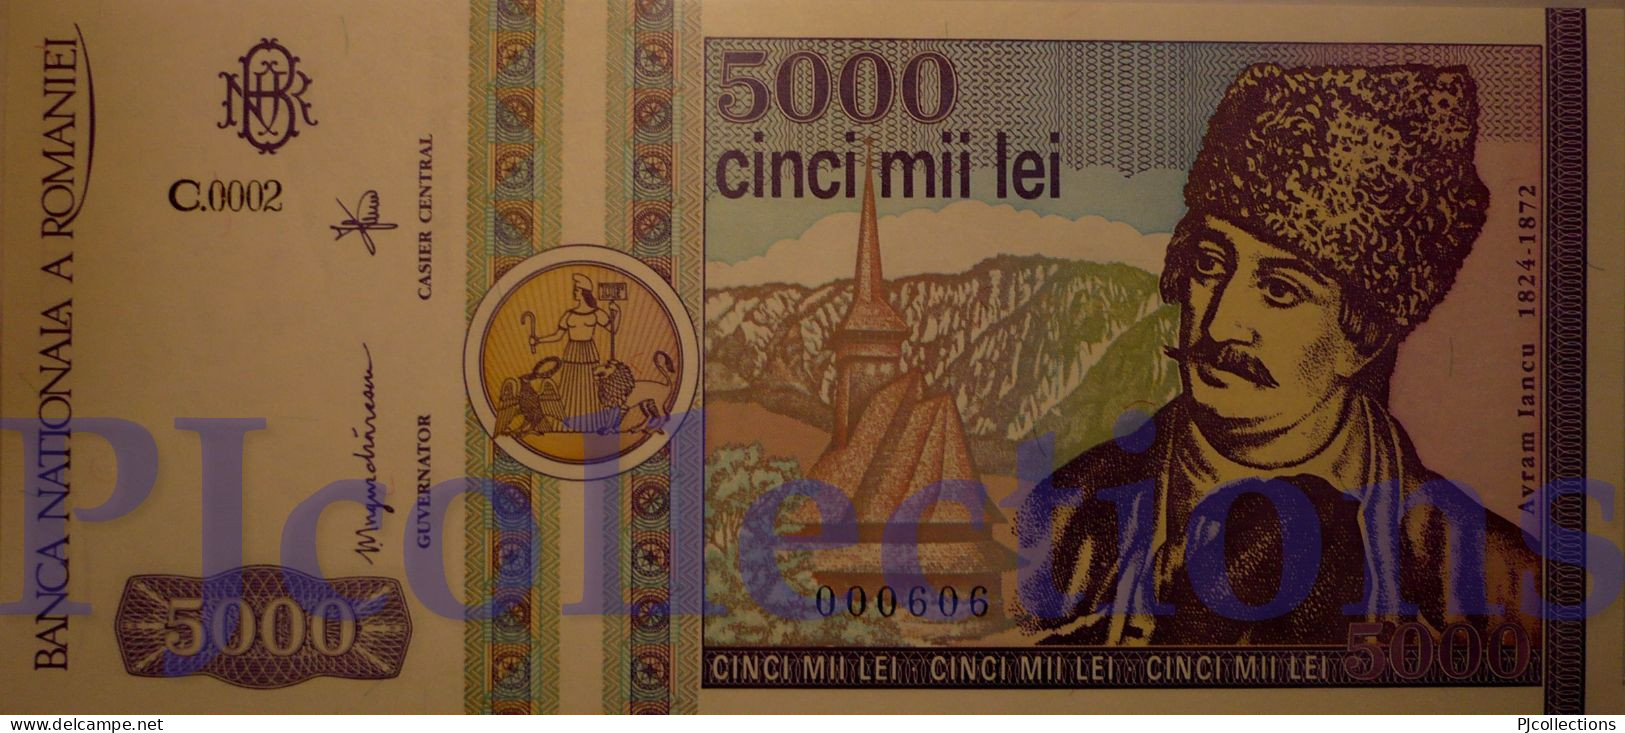 ROMANIA 5000 LEI 1992 PICK 103 UNC LOW & GOOD SERIAL NUMBER "000606" - Romania